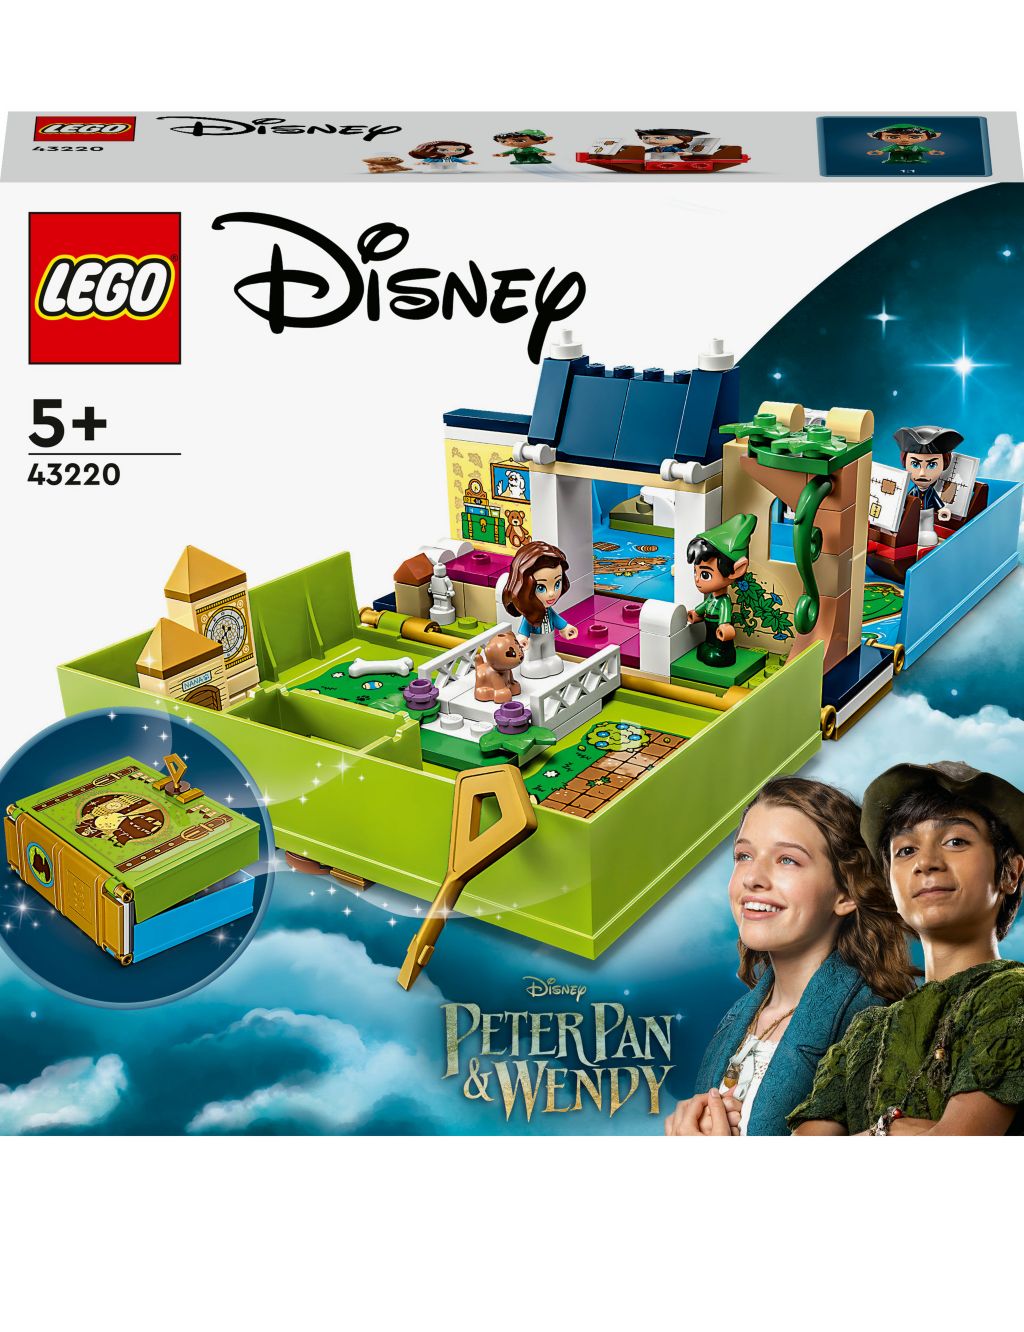 LEGO | Disney Peter Pan & Wendy Storybook Set 43220 (5+ Yrs) 2 of 6